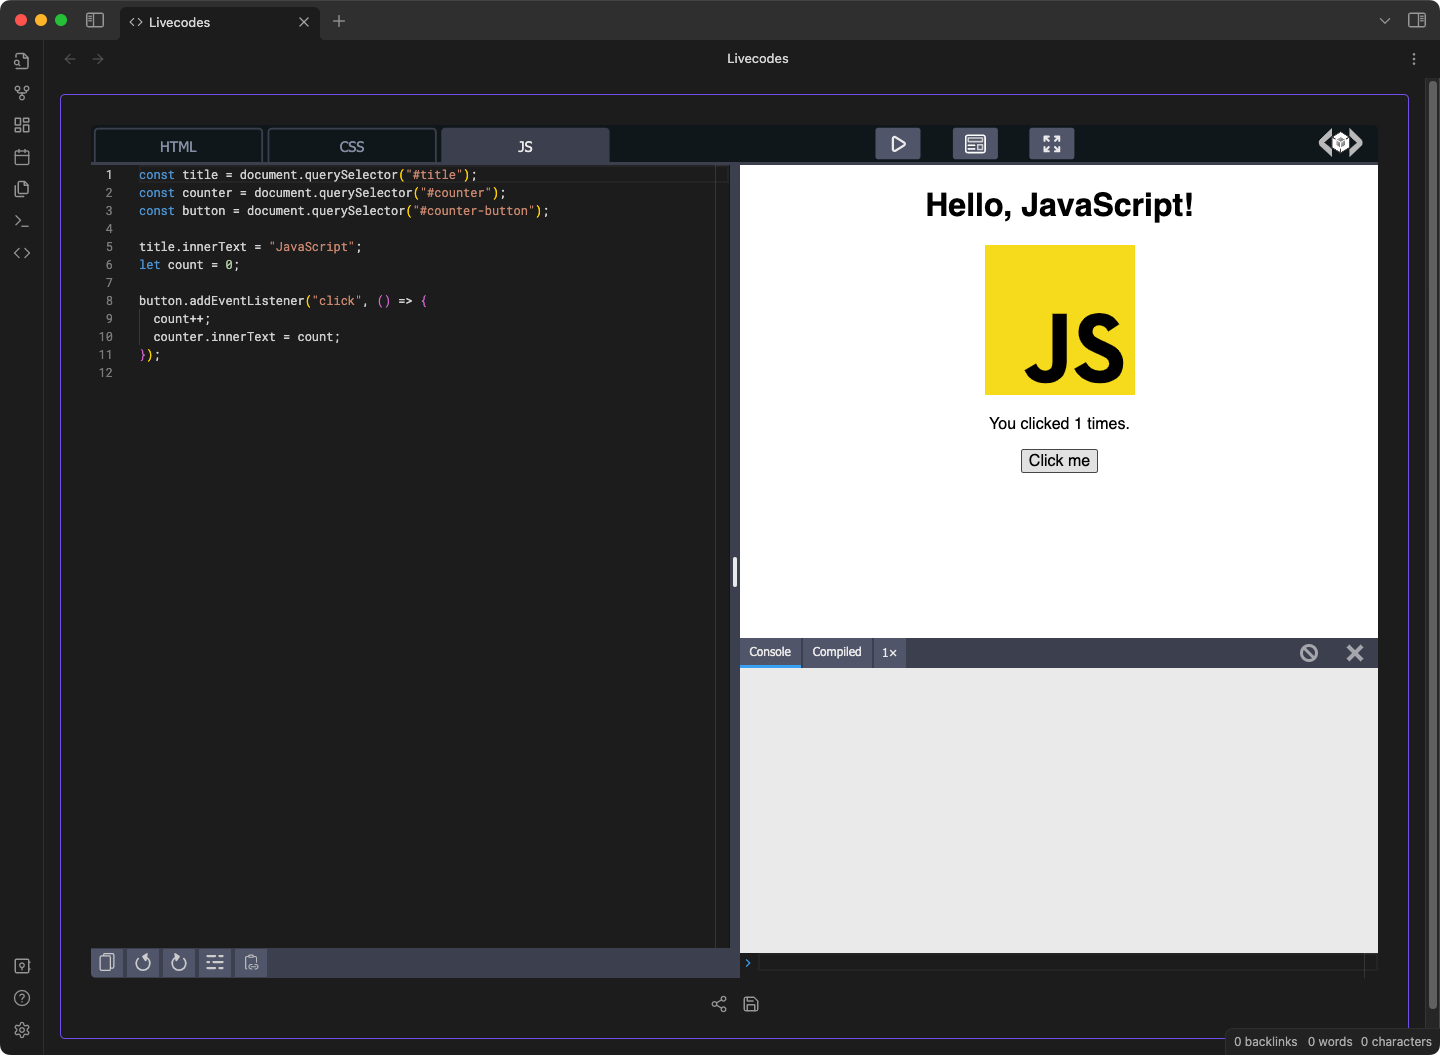 screenshot of JavaScript REPL